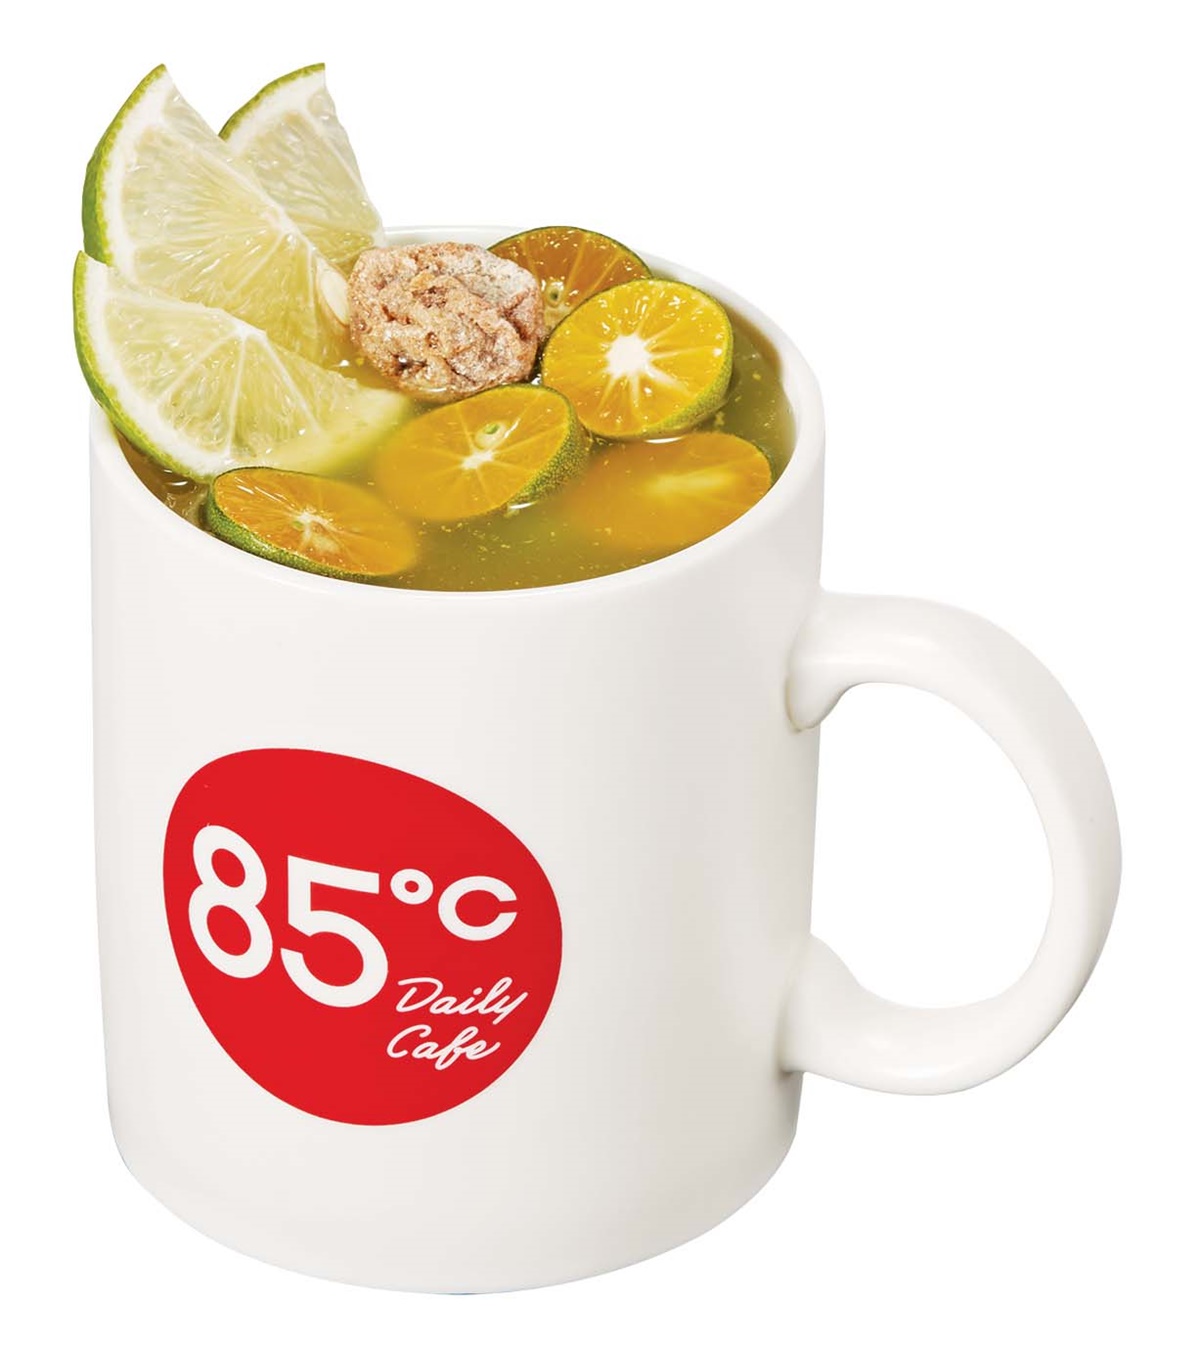 85度C冬季飲品到！「寶島水果茶」狂加４配料夠霸氣，金桔檸檬、桂圓茶也推